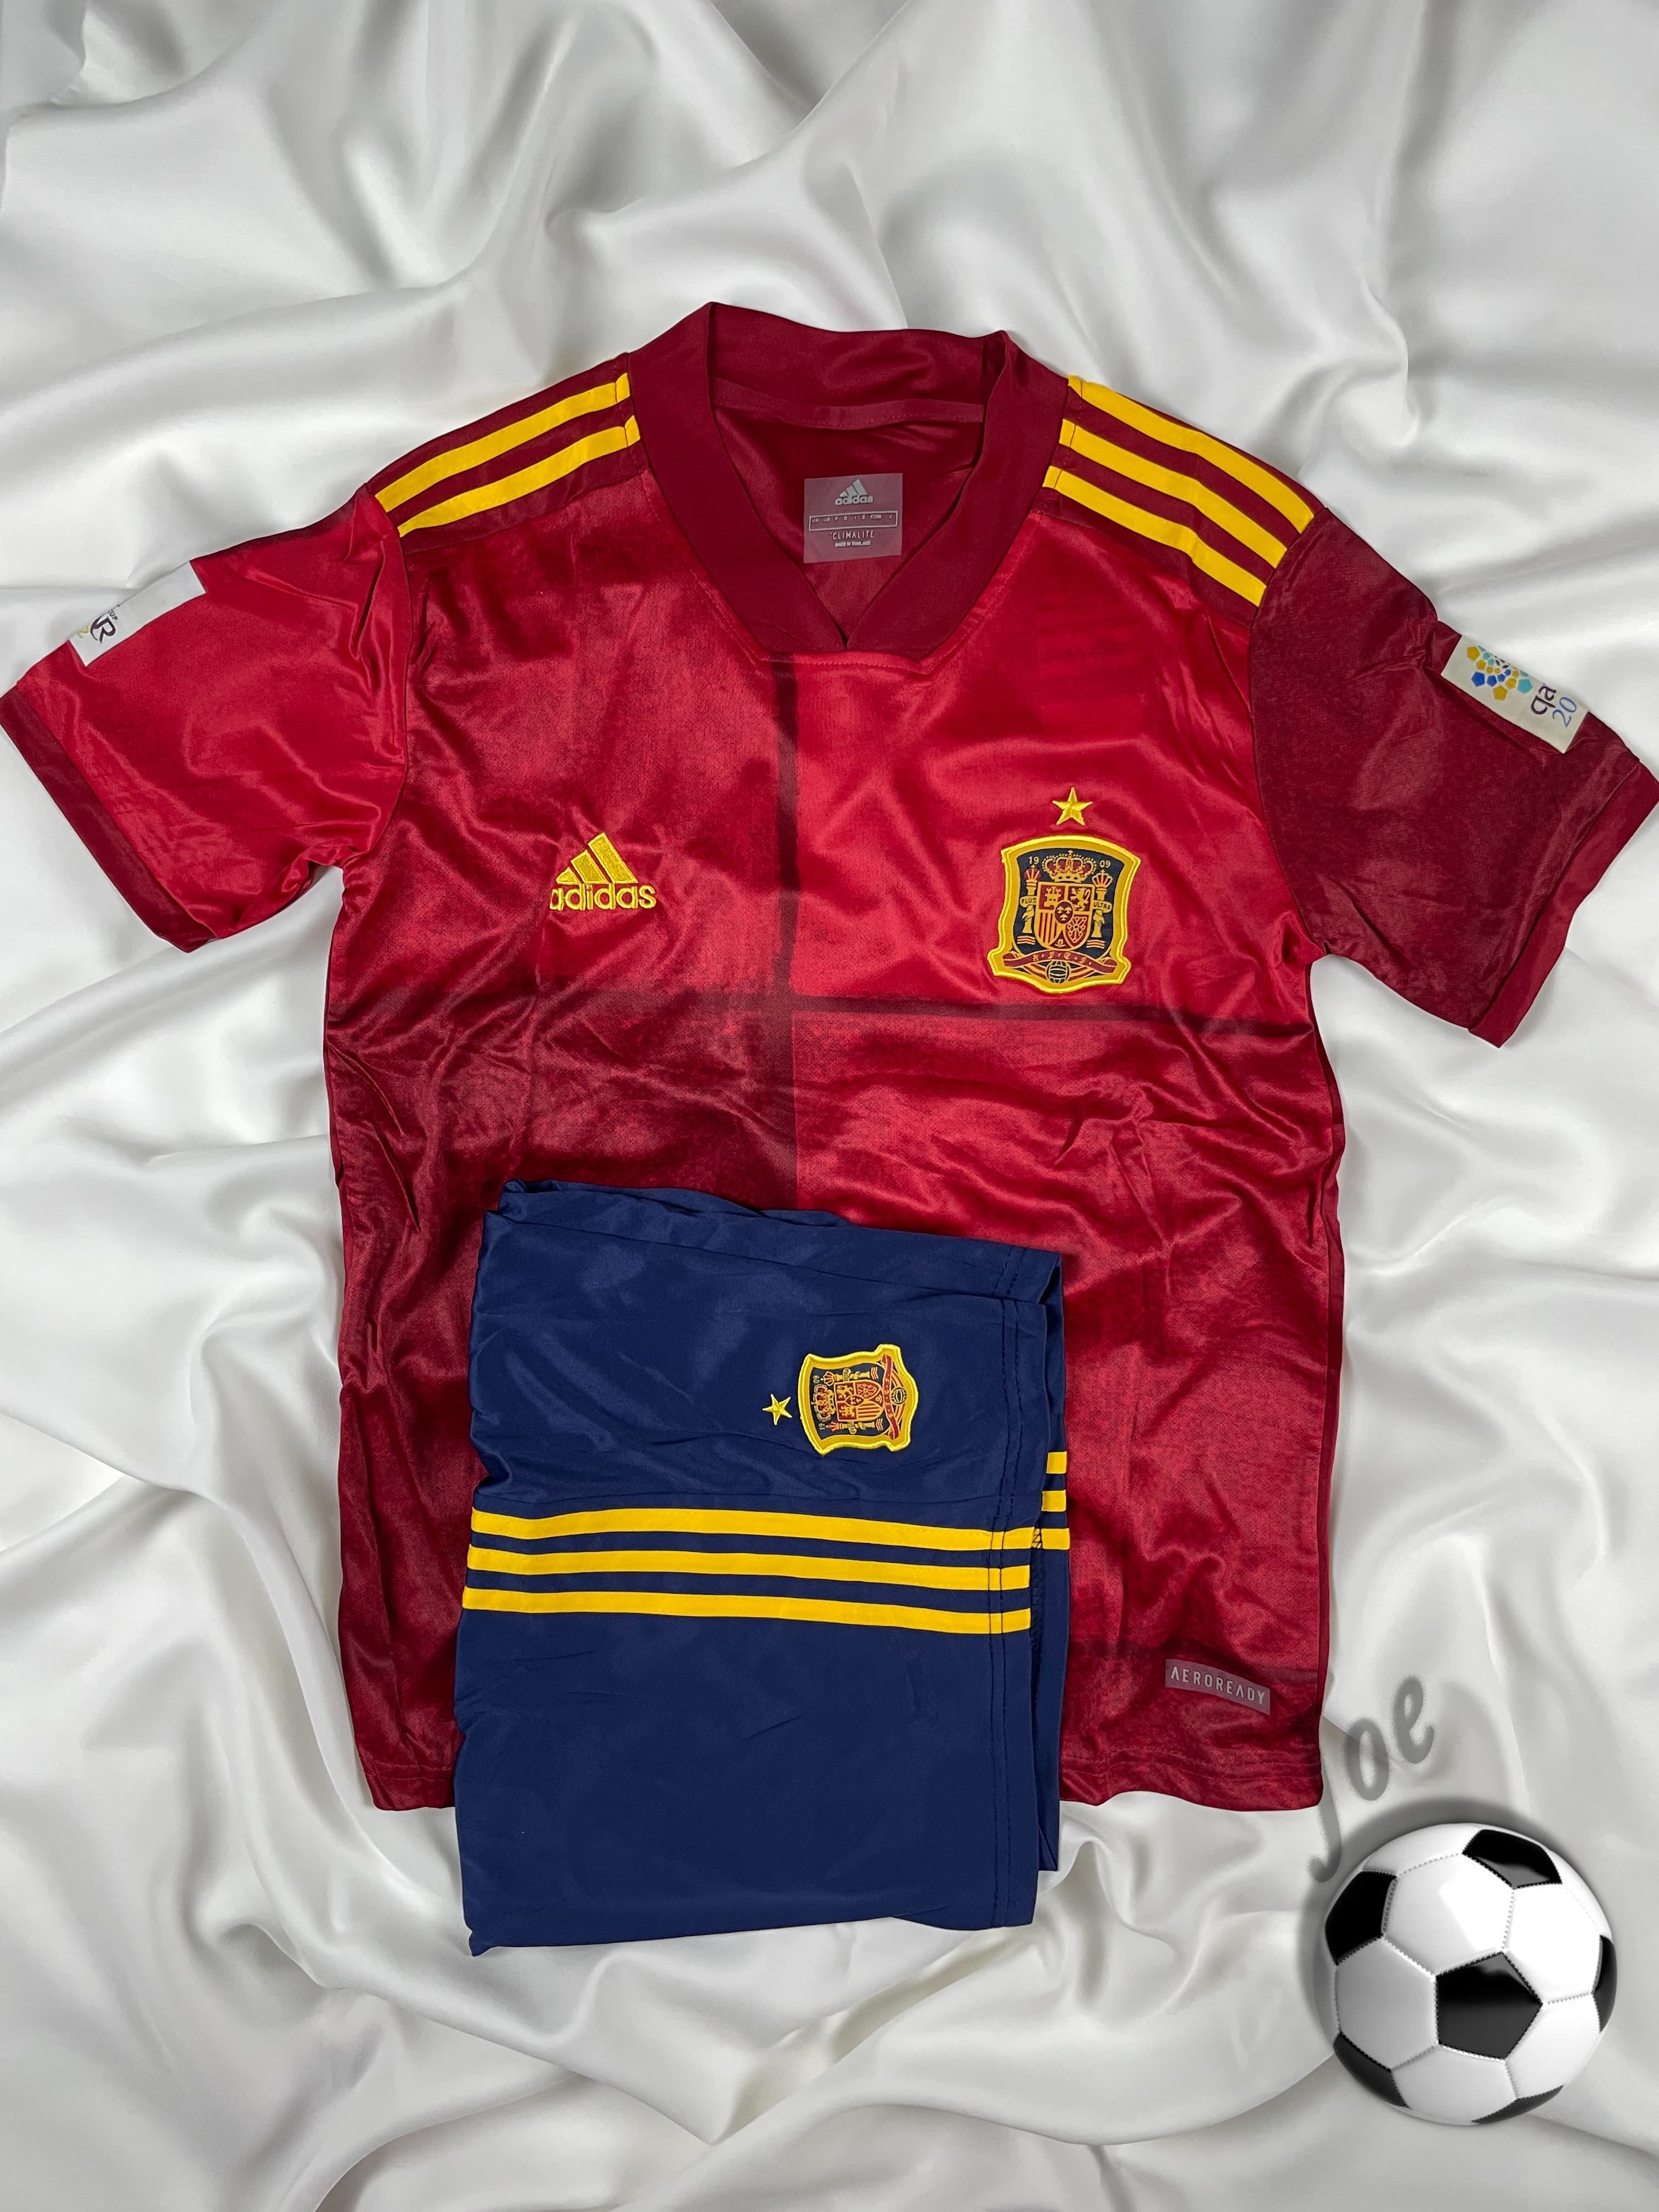 ชุดบอลทีมชาติ Spain เสื้อบอลและกางเกงบอลผู้ชาย ปี 2020-2021 ใหม่ล่าสุด